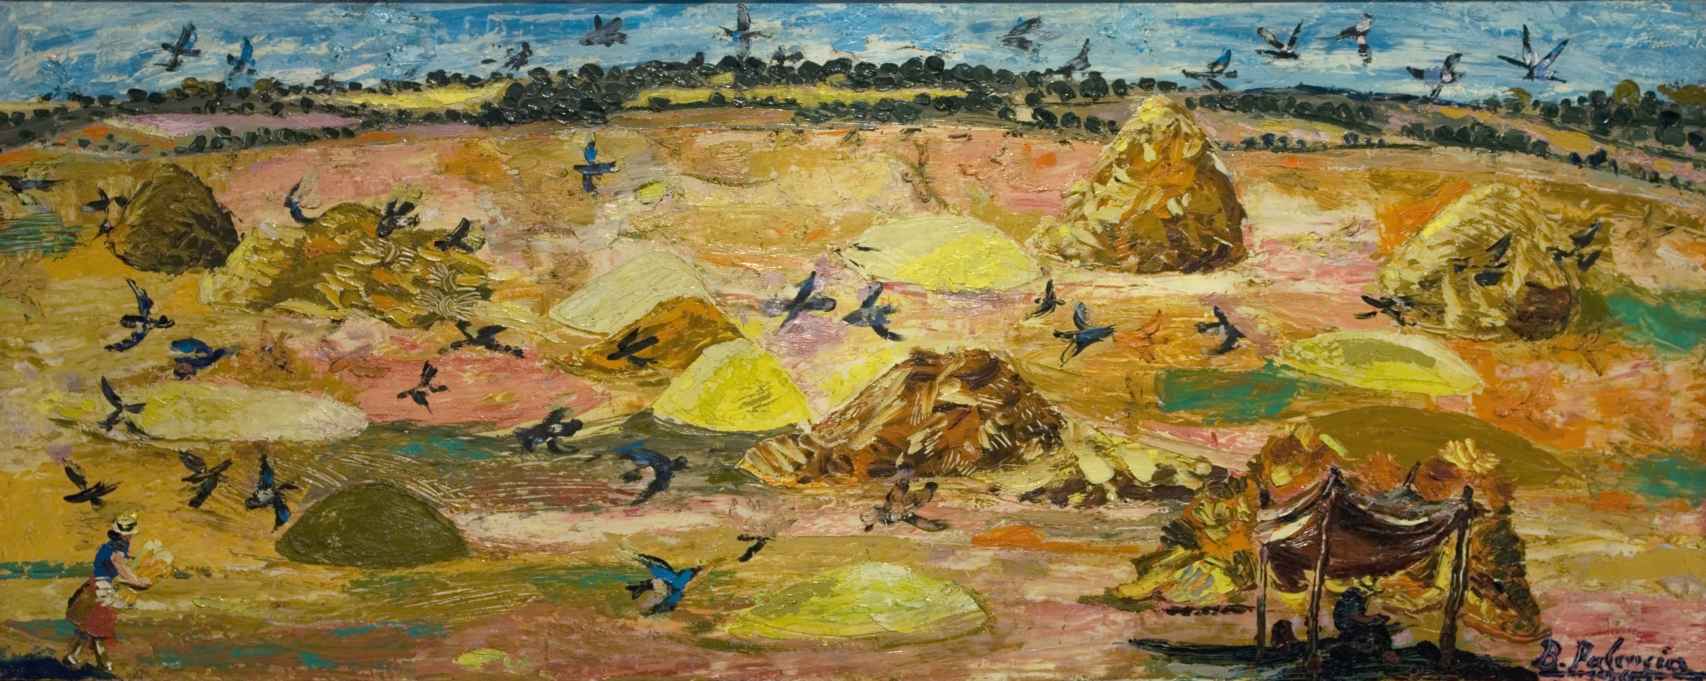 Uno de los paisajes de Benjamín Palencia, titulado 'La era de los pájaros'.